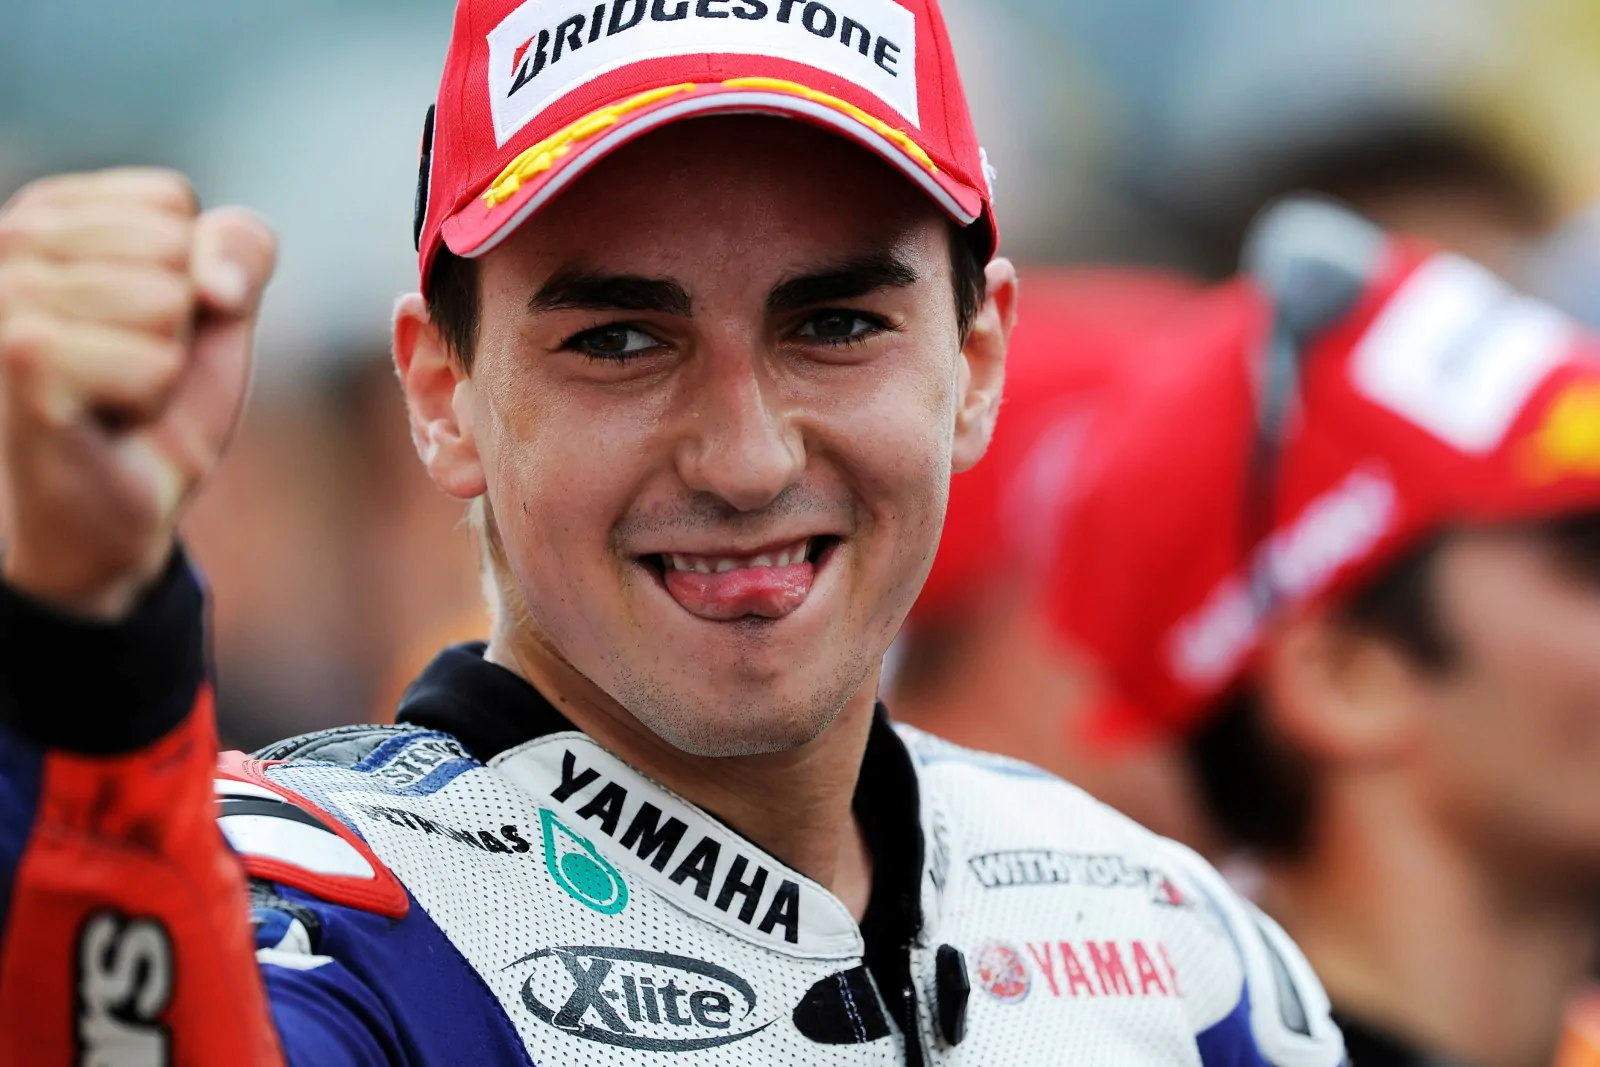 MotoGP, Lorenzo: "Voglio concludere la mia carriera alla Ducati"